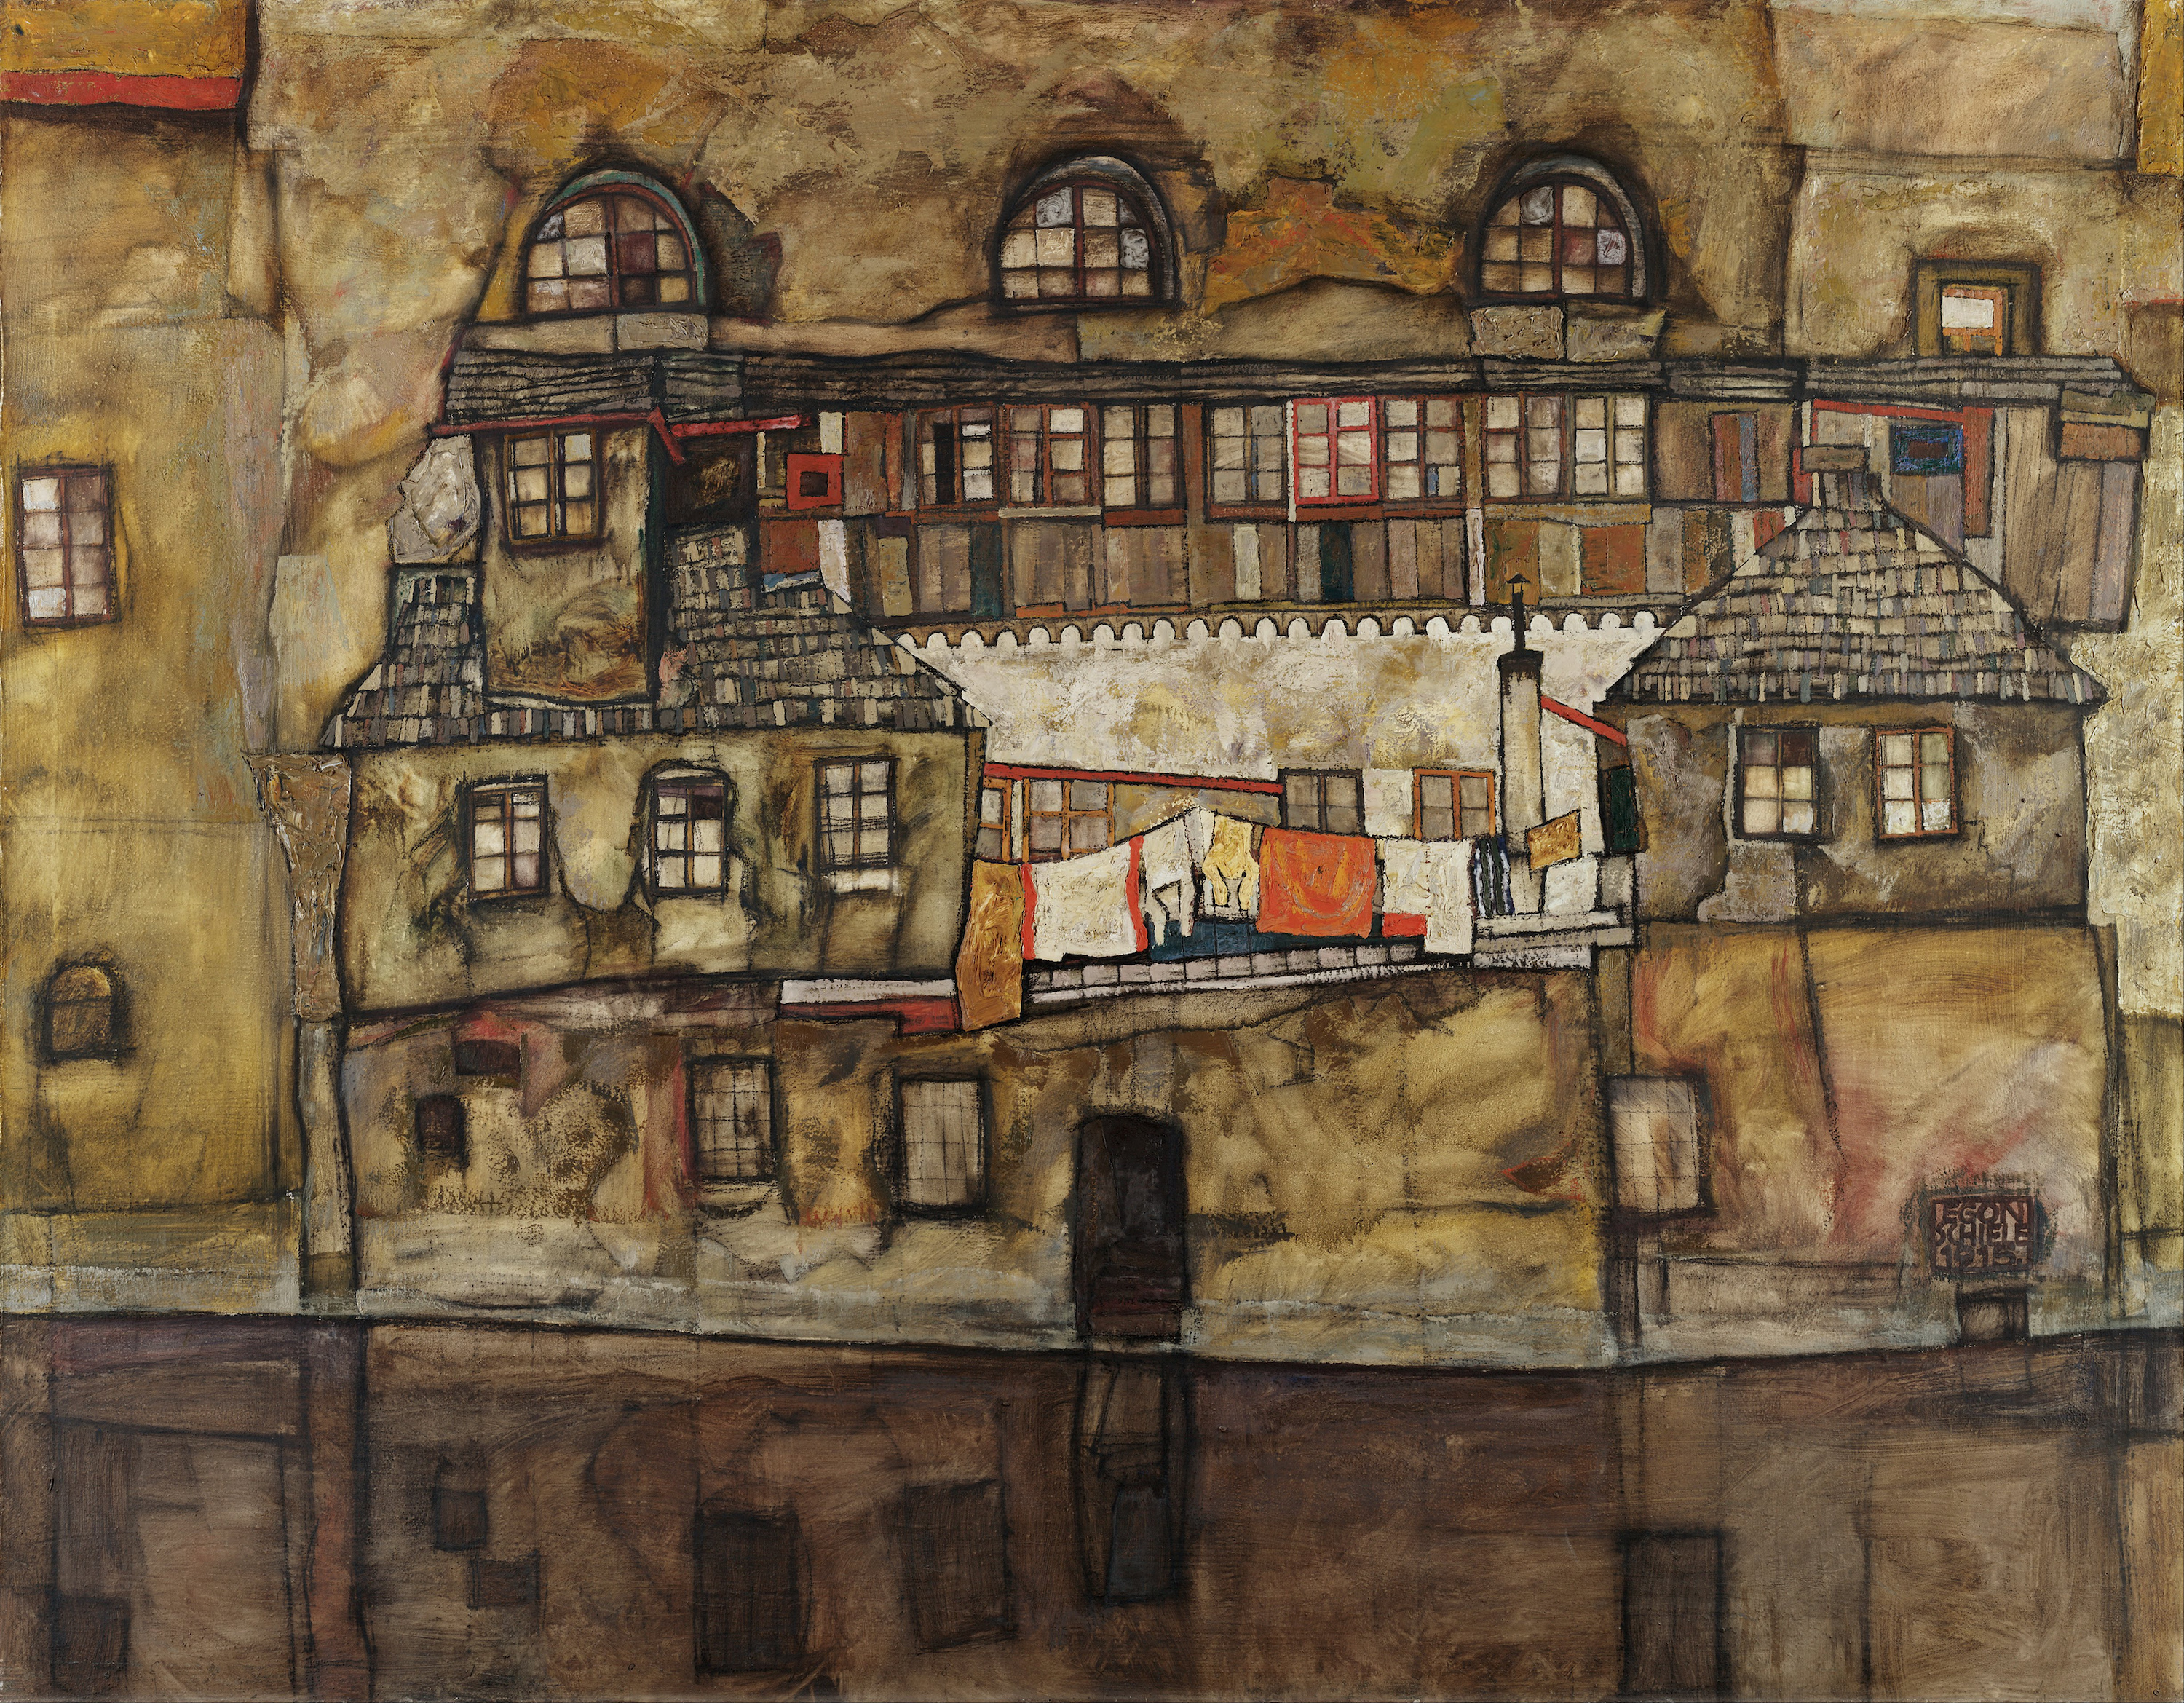 Σπίτι σε ποτάμι by Έγκον Σίλε - 1915 - 109,5 x 140 εκ. 